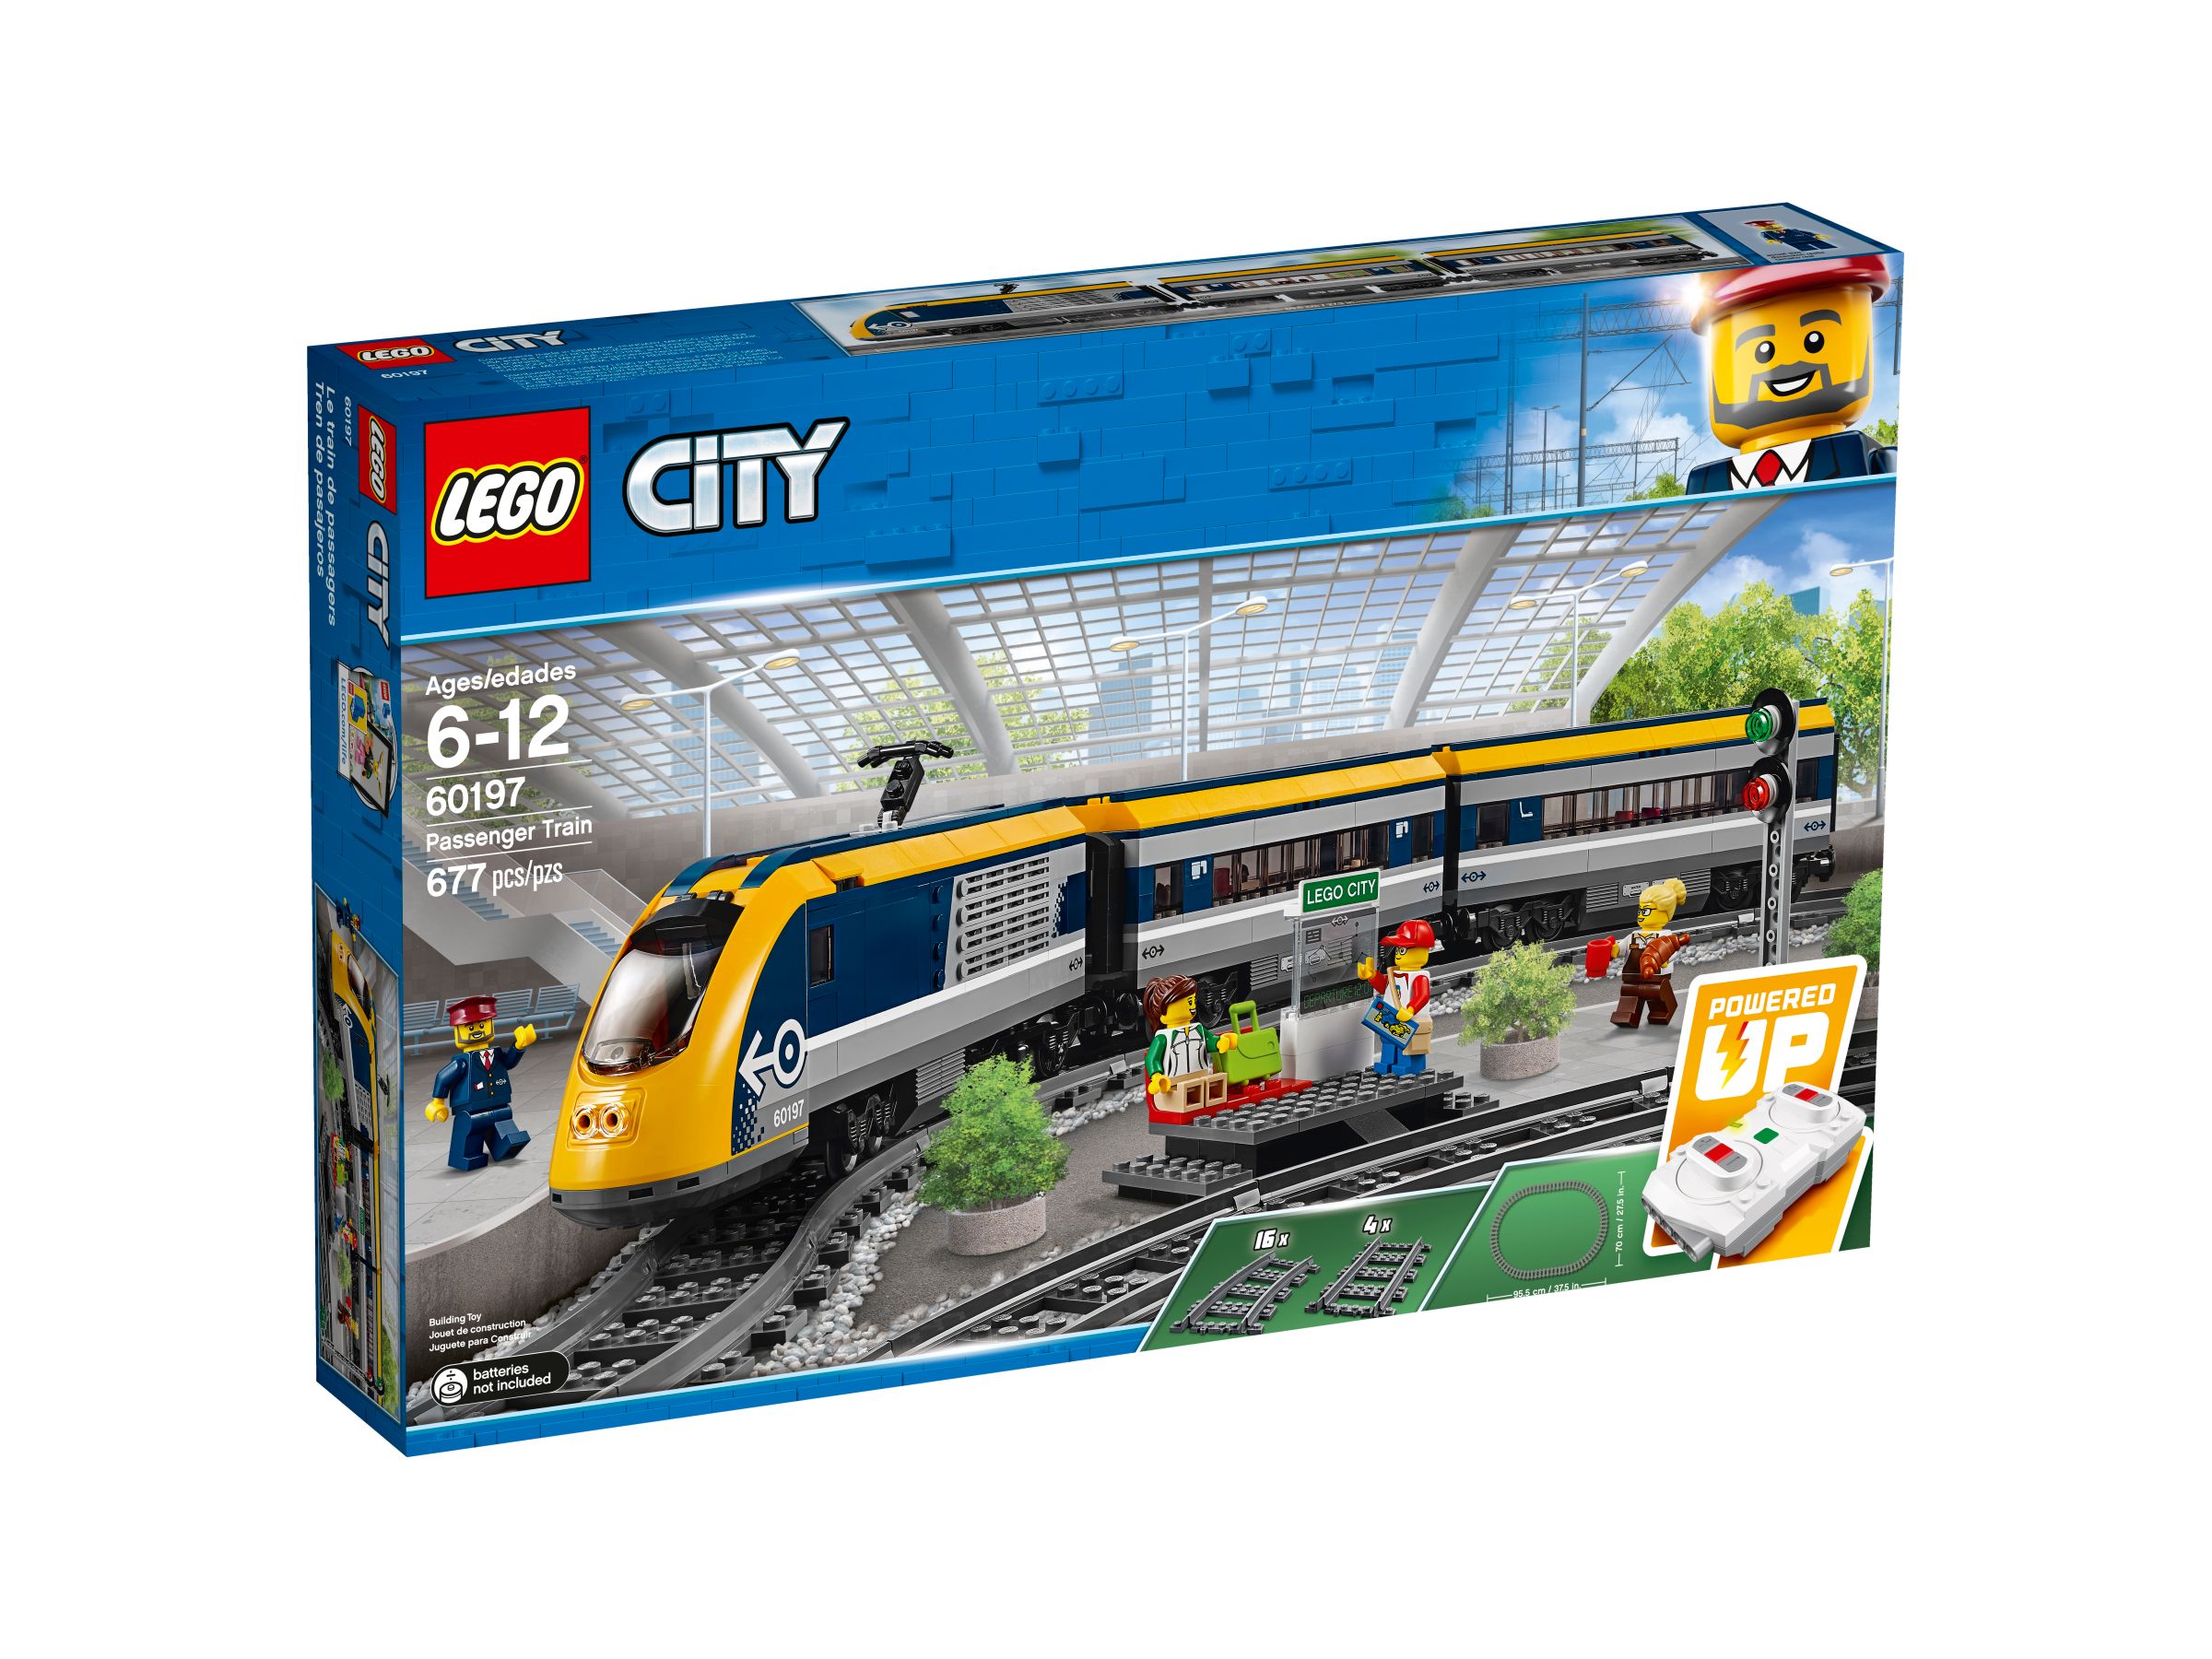 LEGO City 60197 Personenzug LEGO_60197_alt1.jpg